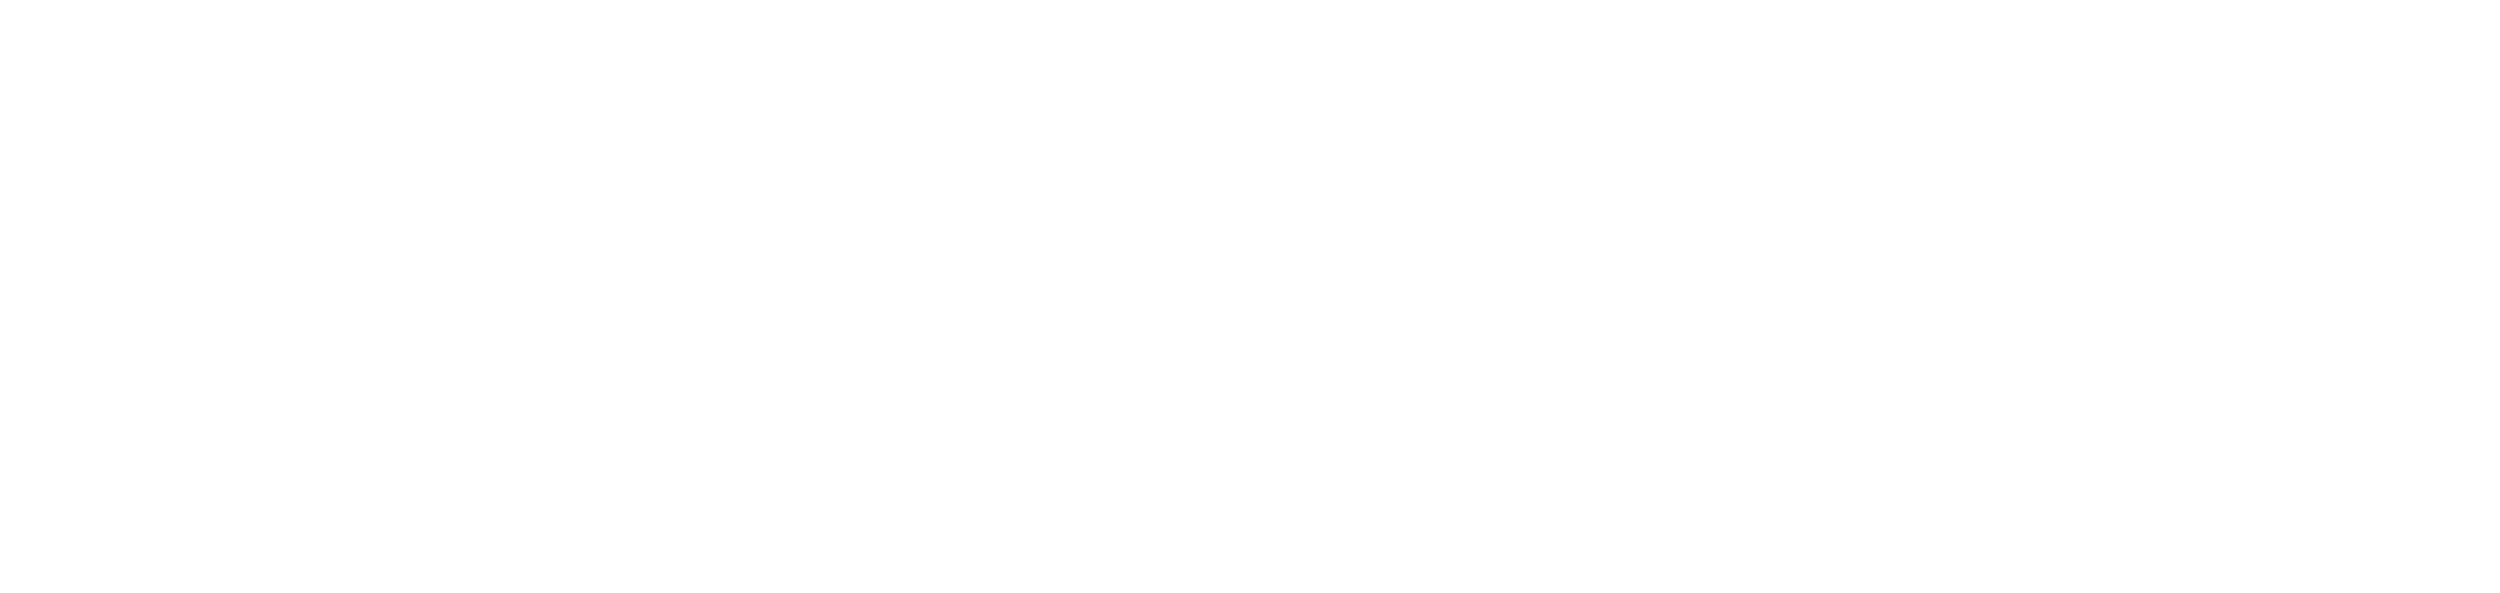 2uLaundry-BLog-logo.png